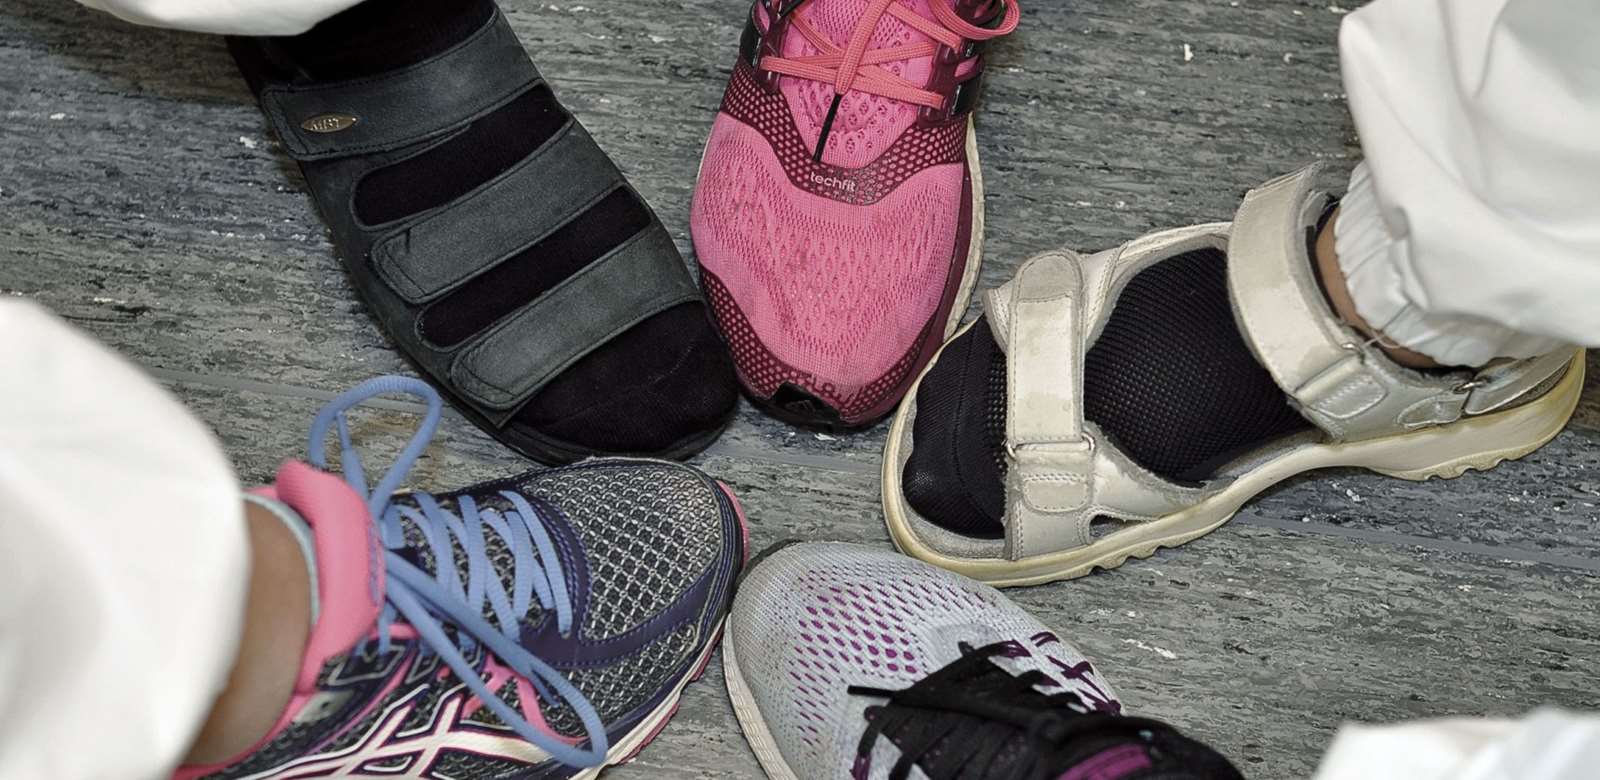 Necklet very much entrepreneur Riktige sko gir stor helsegevinst | Bioingeniøren